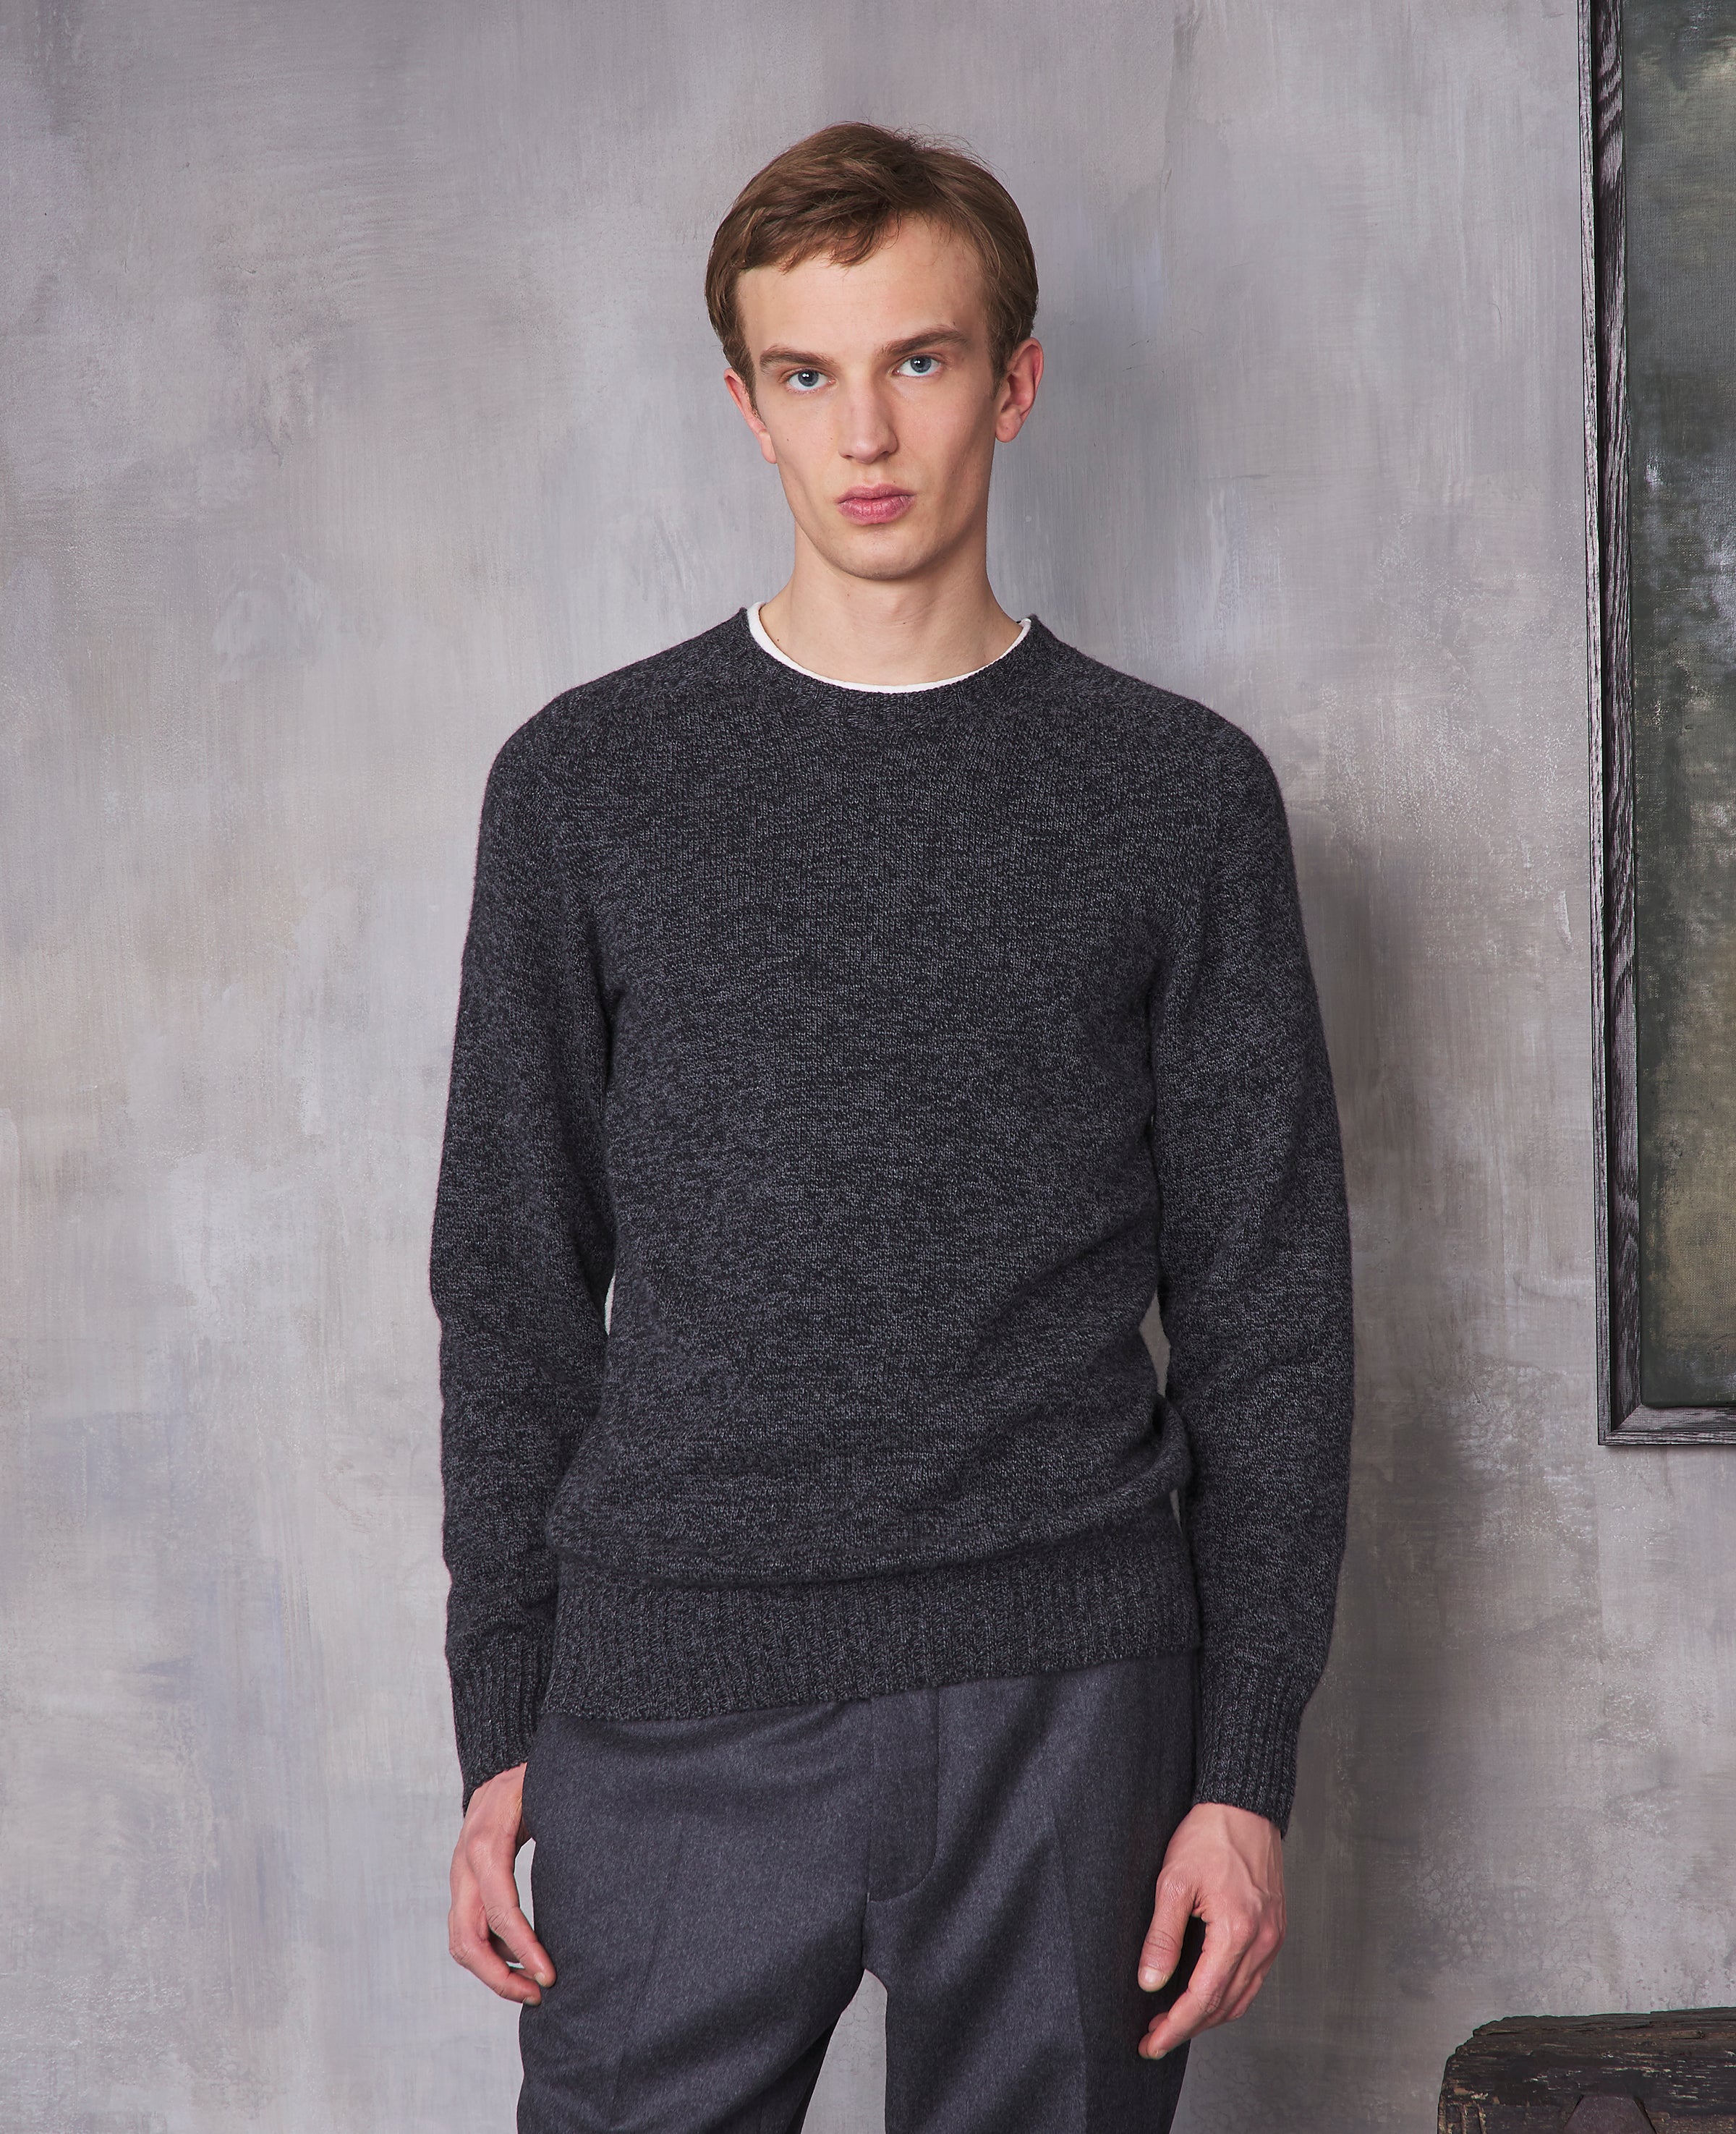 OG - Homme | Men's knitwear – Officine Générale